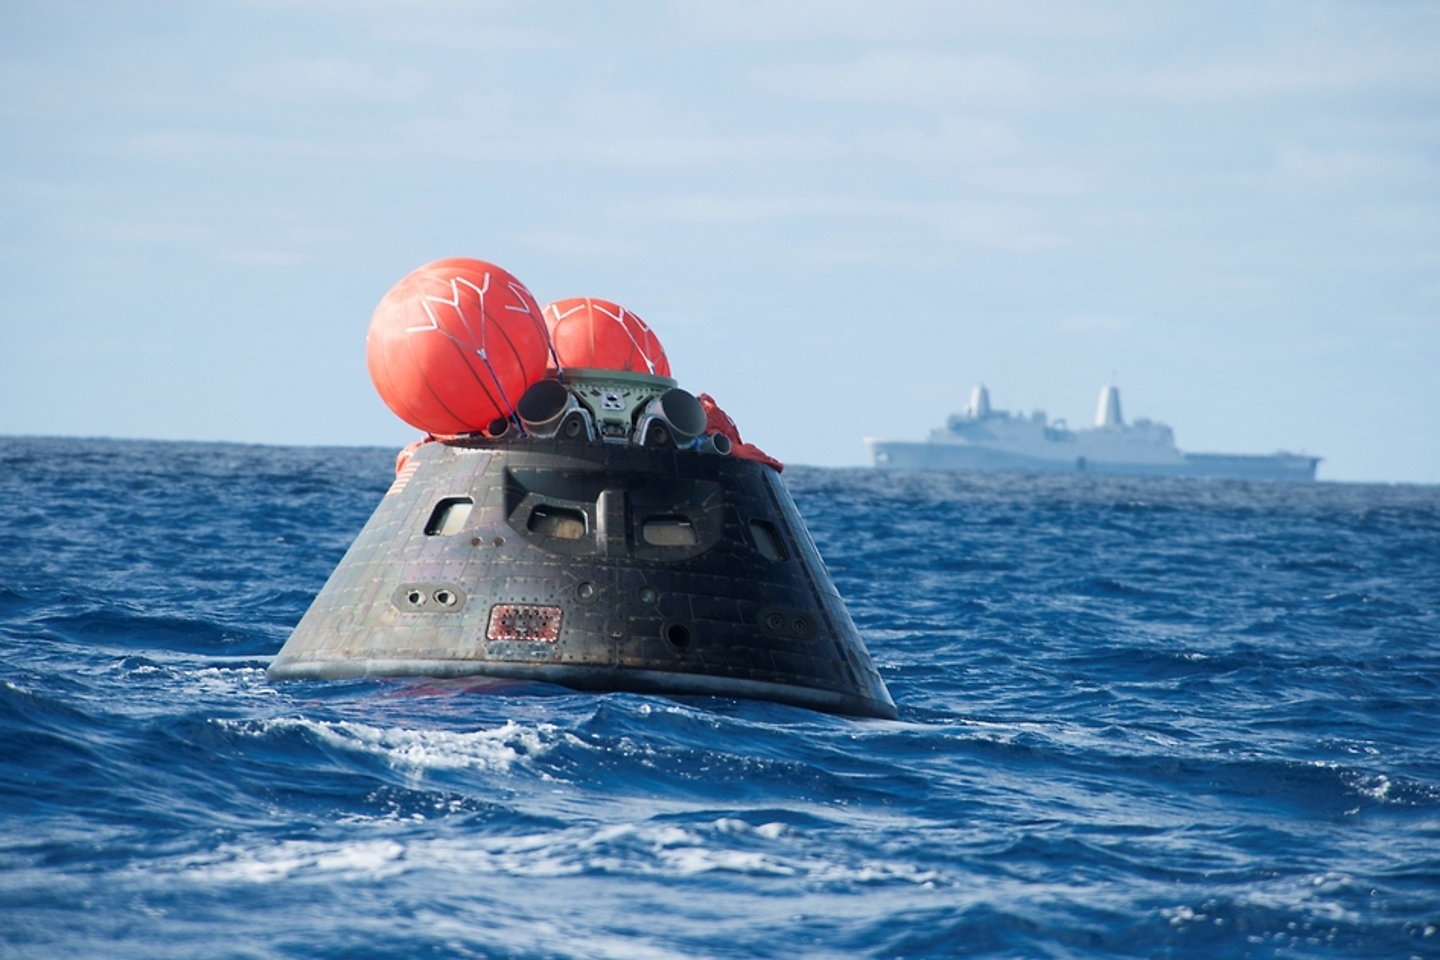 5 декабря 2014 года космический аппарат «Орион» был запущен в космос и через несколько часов капсула была сброшена в Тихом океане. Военно-морской корабль на заднем плане поднял капсулу после ее безопасной посадки.